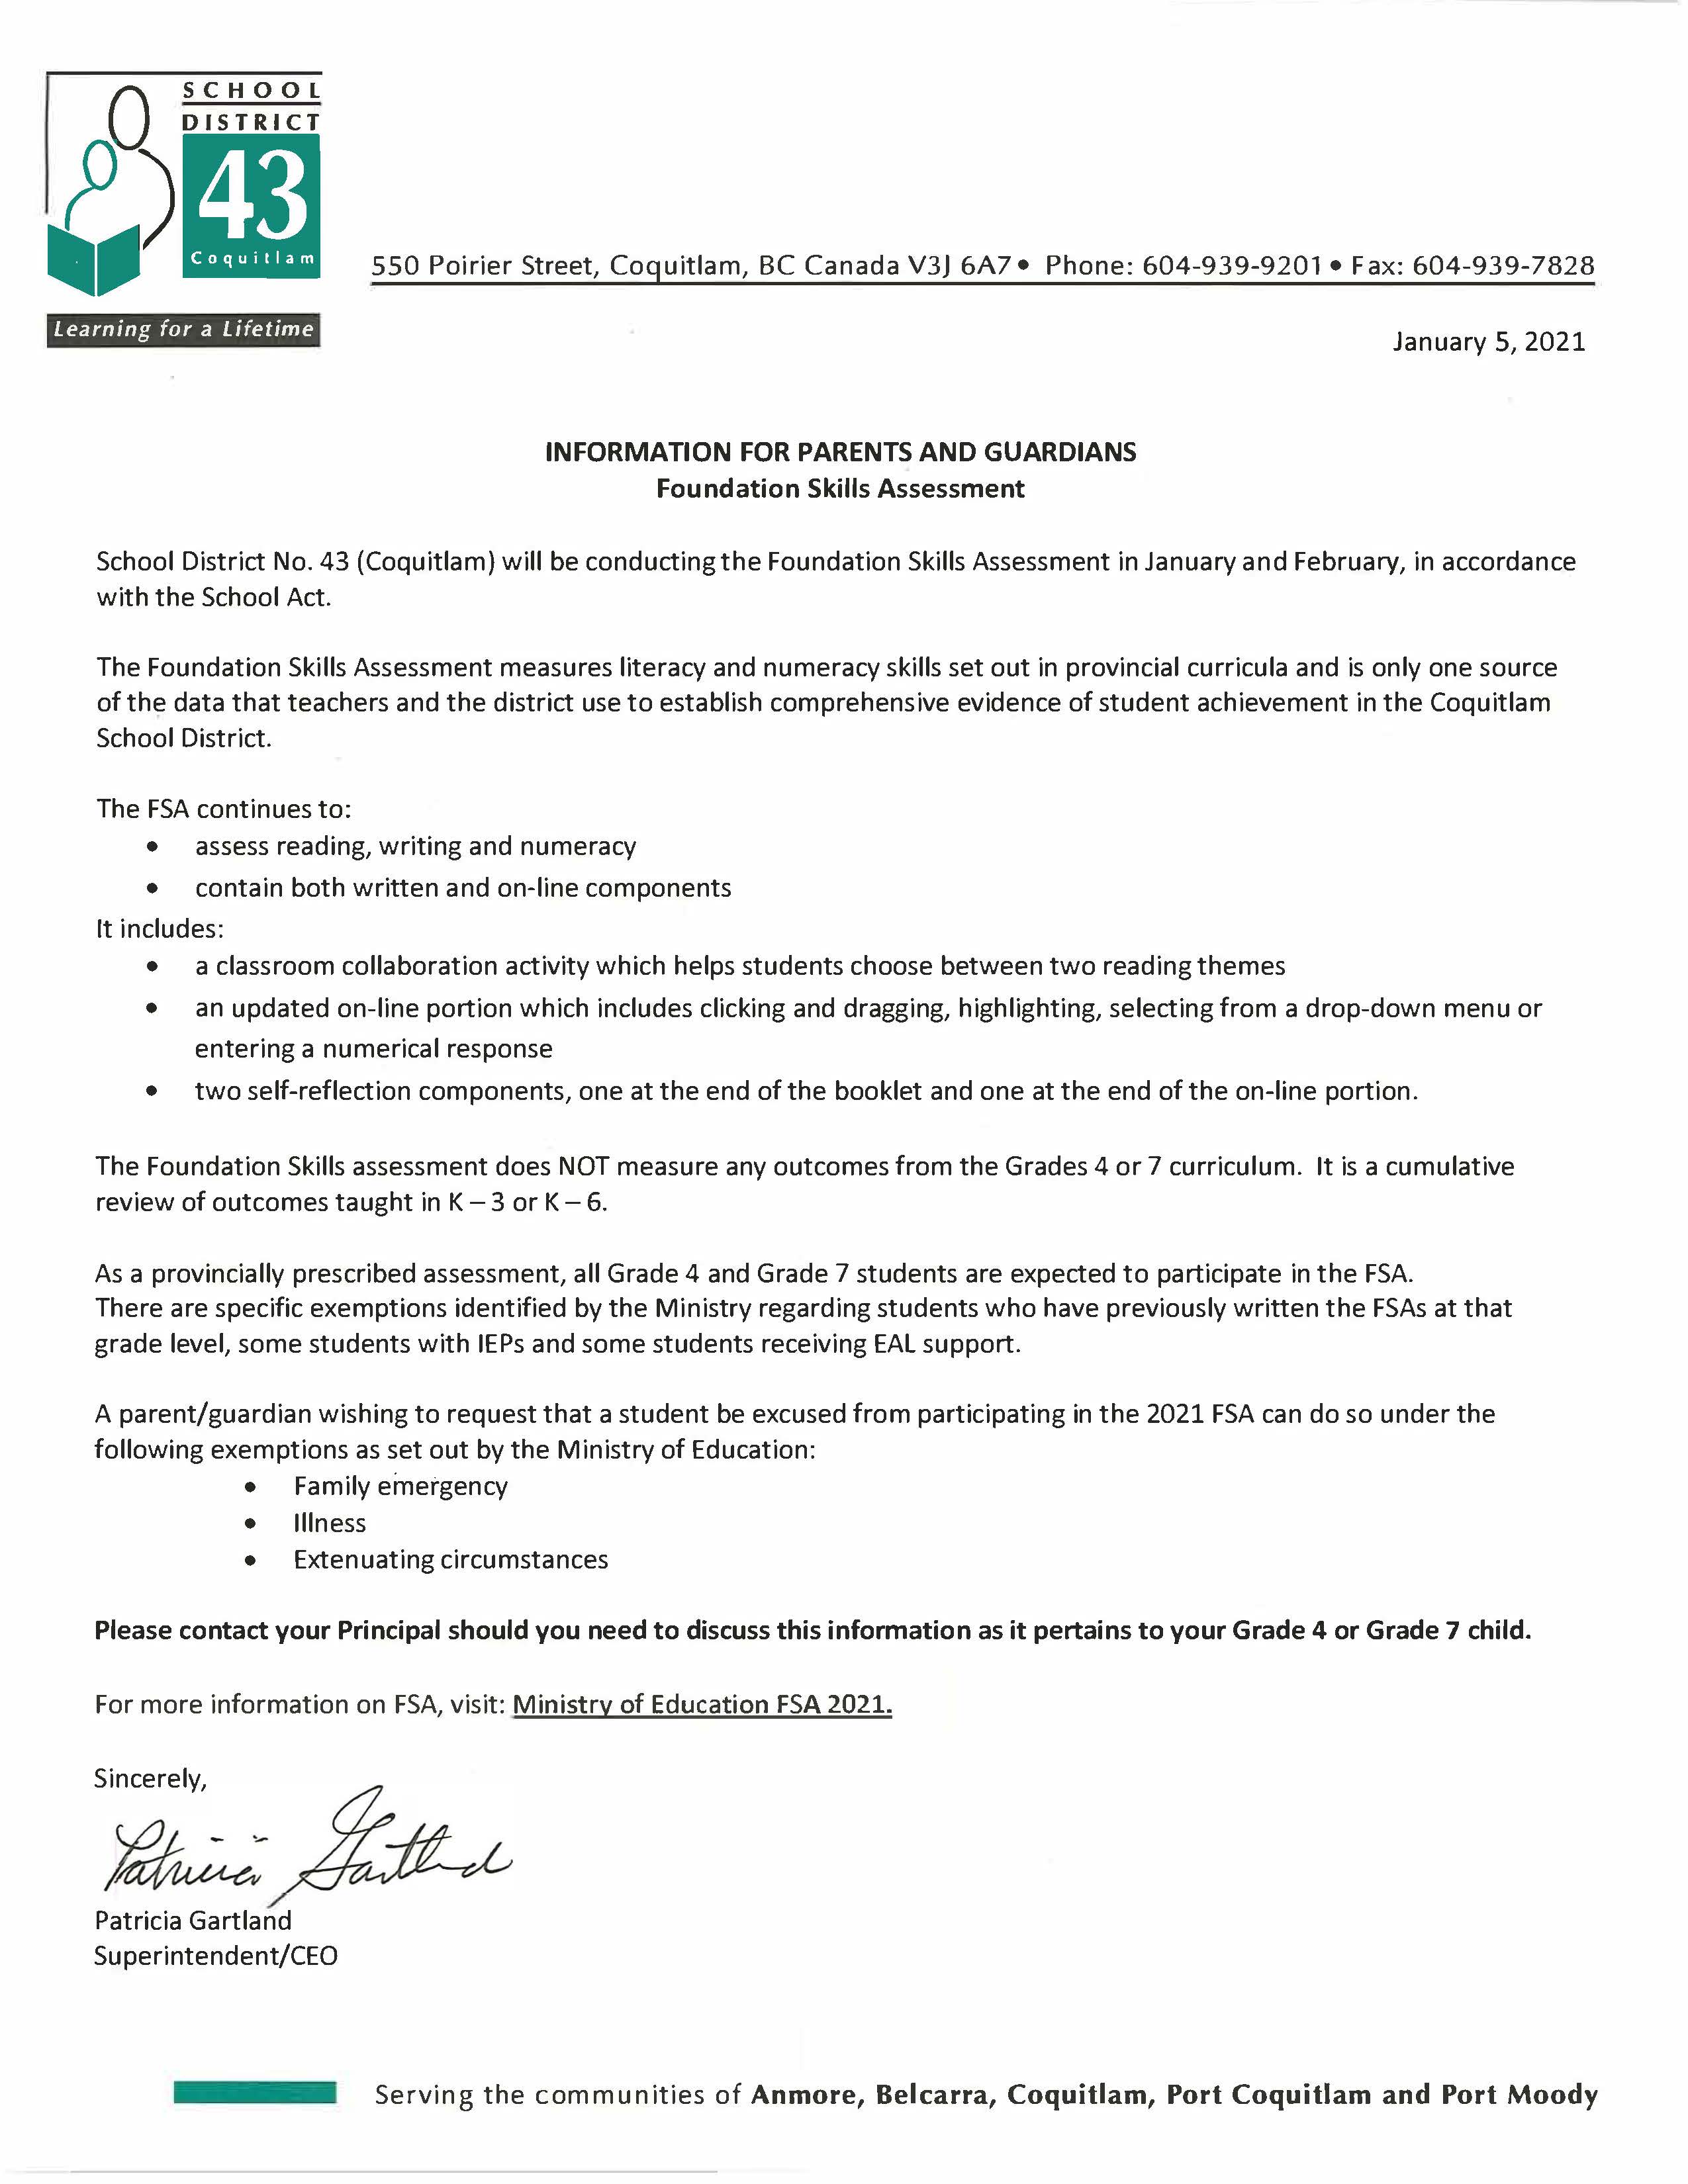 FSA Letter from Superintendent January 2021.jpg